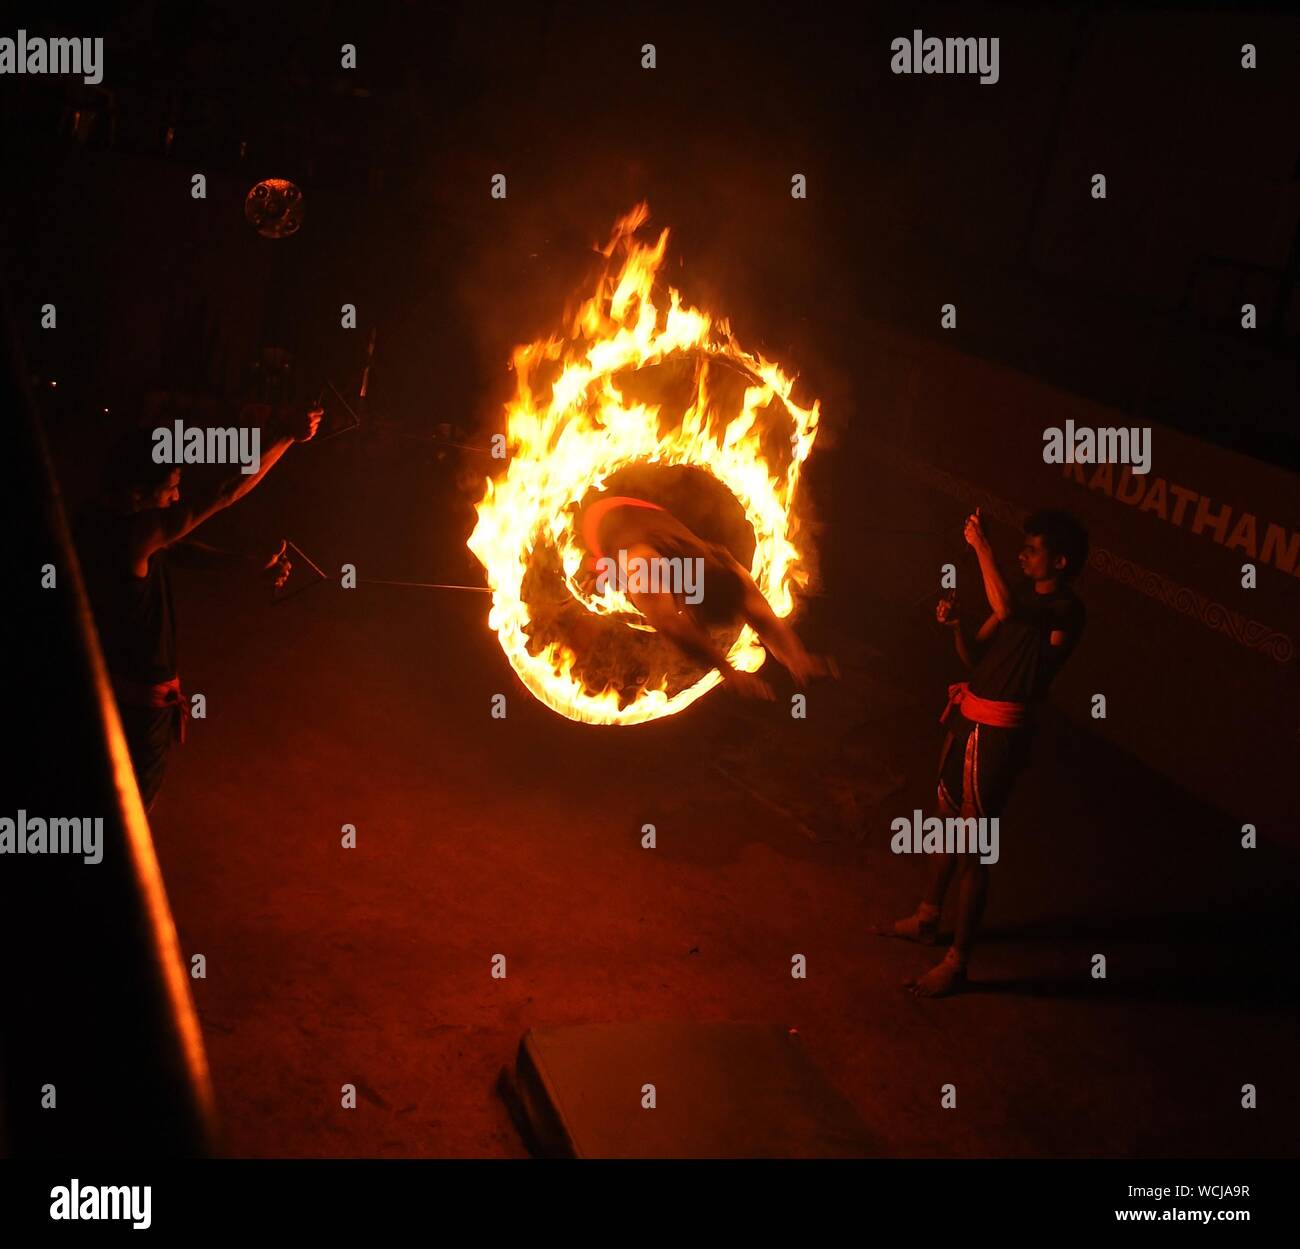 Man hüpft durch brennende Ringe von Feuer in der Nacht Stockfotografie -  Alamy